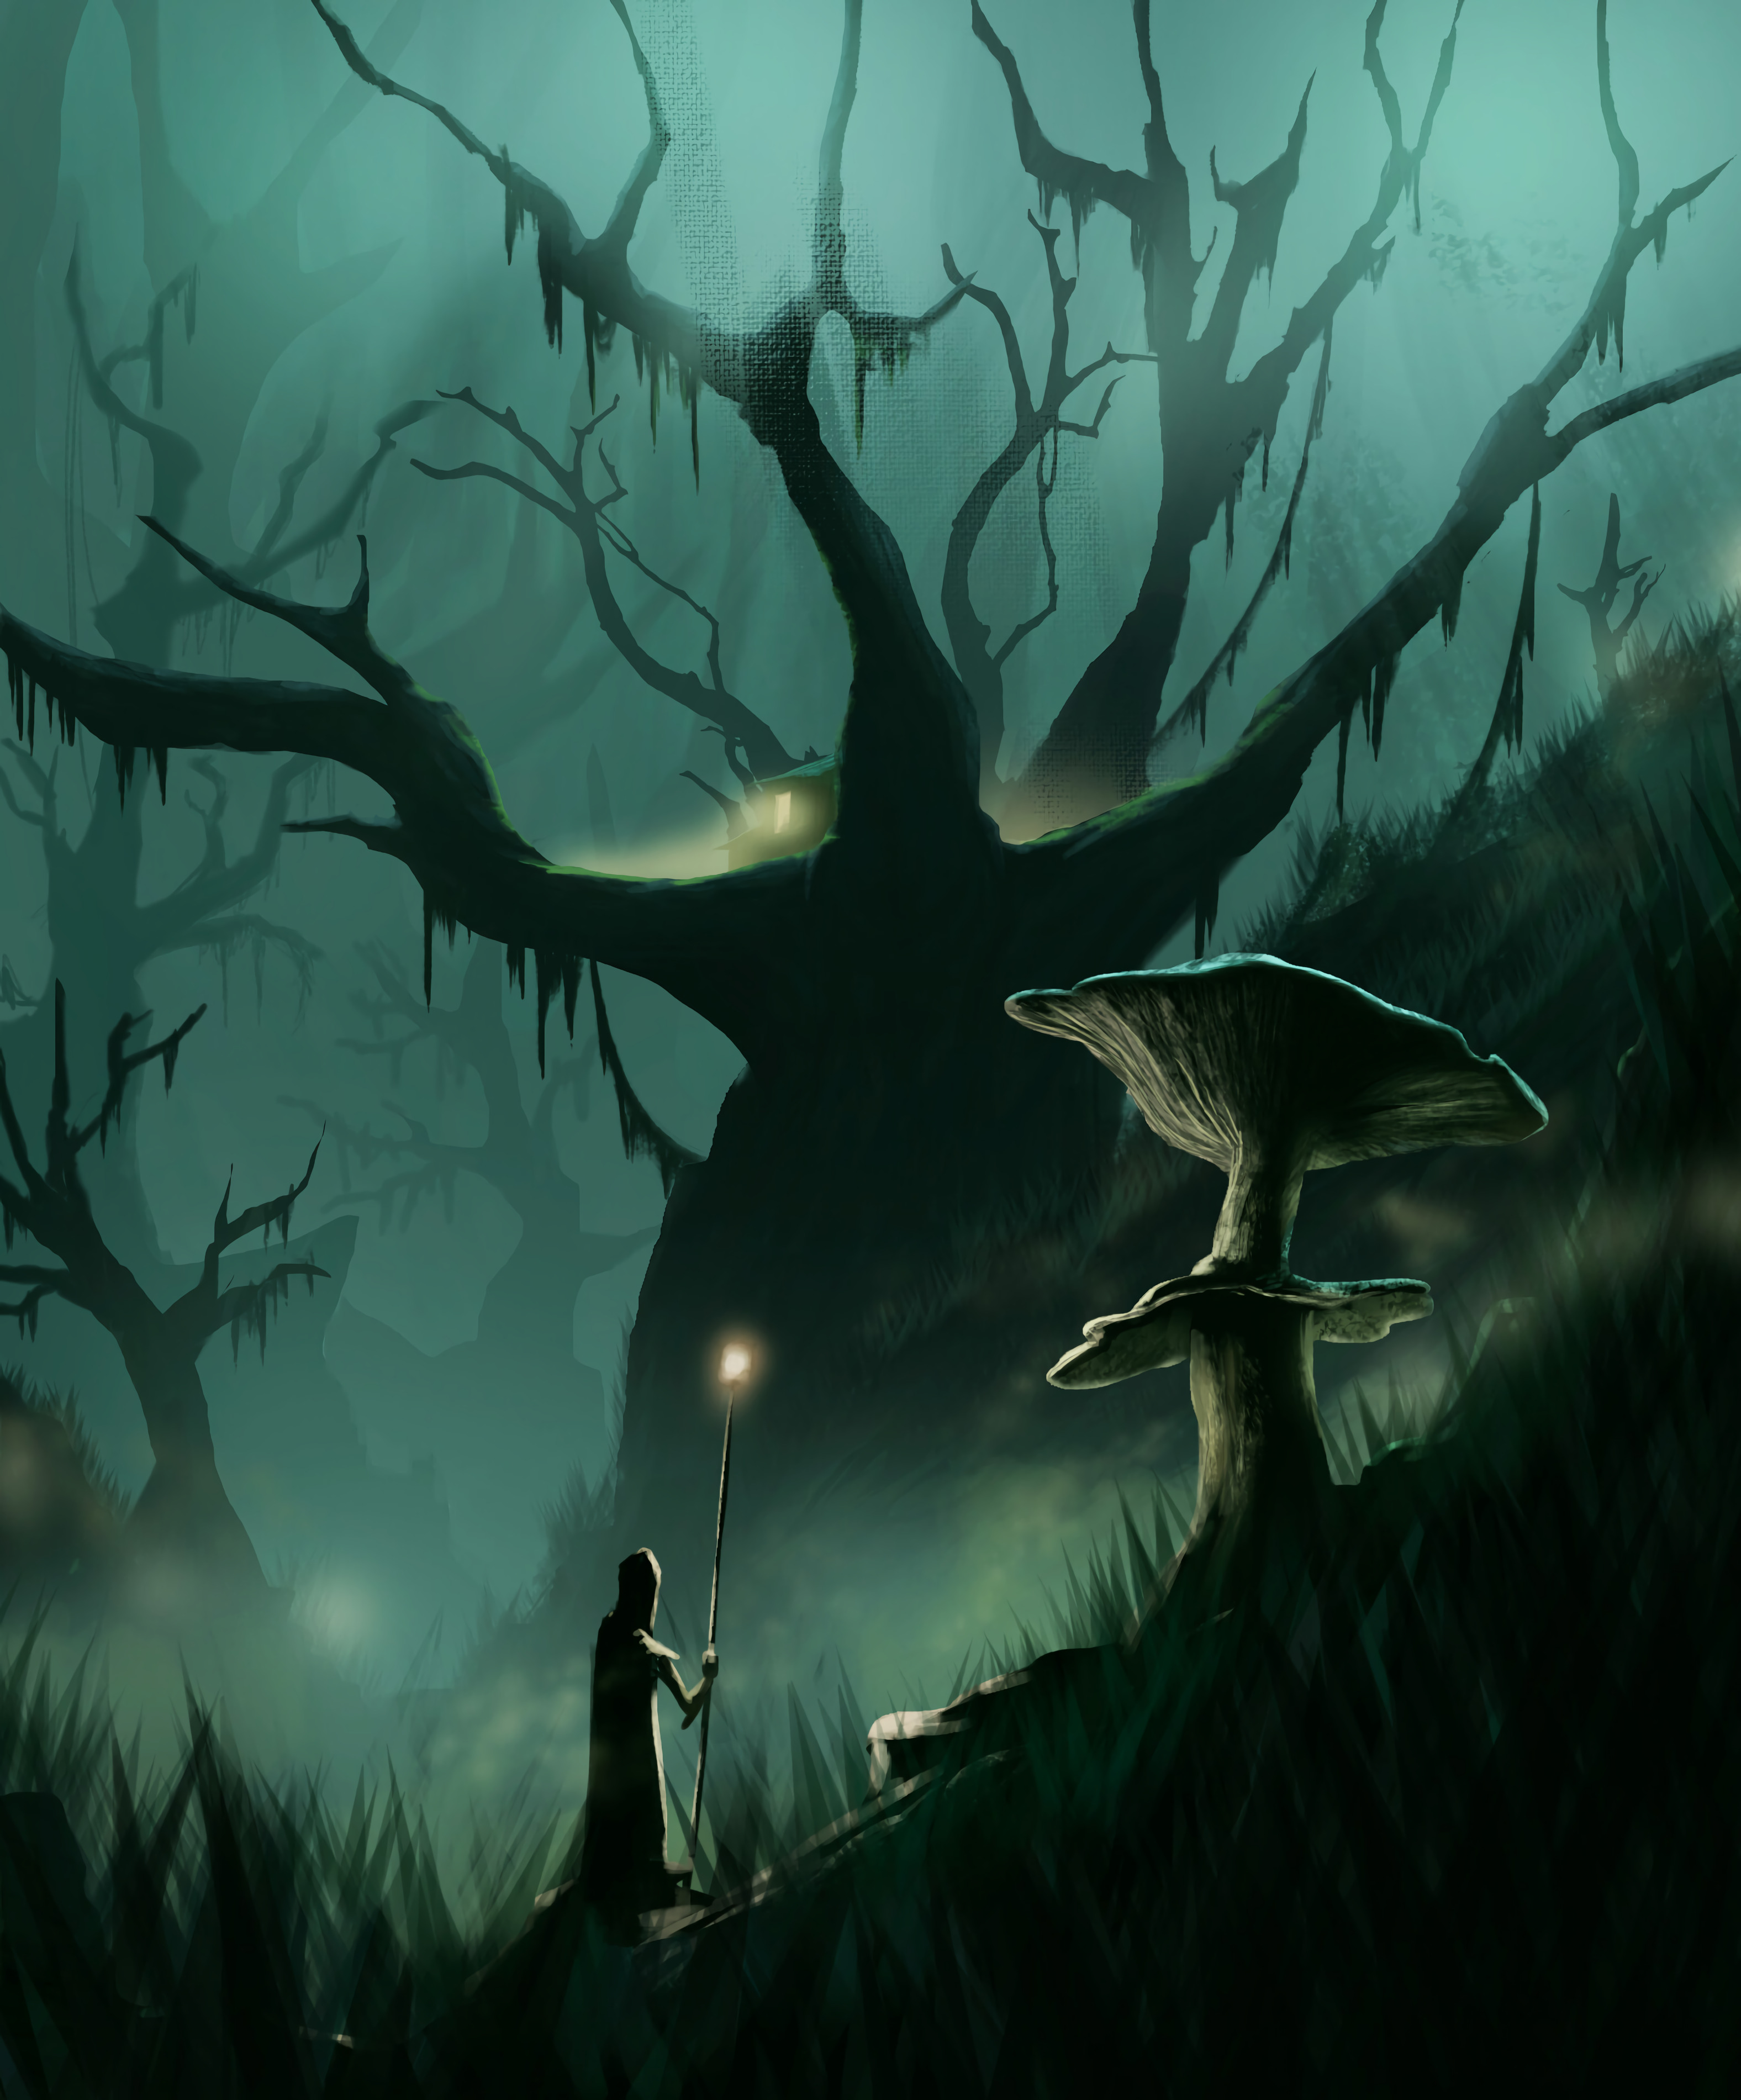 mushroom, art, silhouette, wood, tree, journey